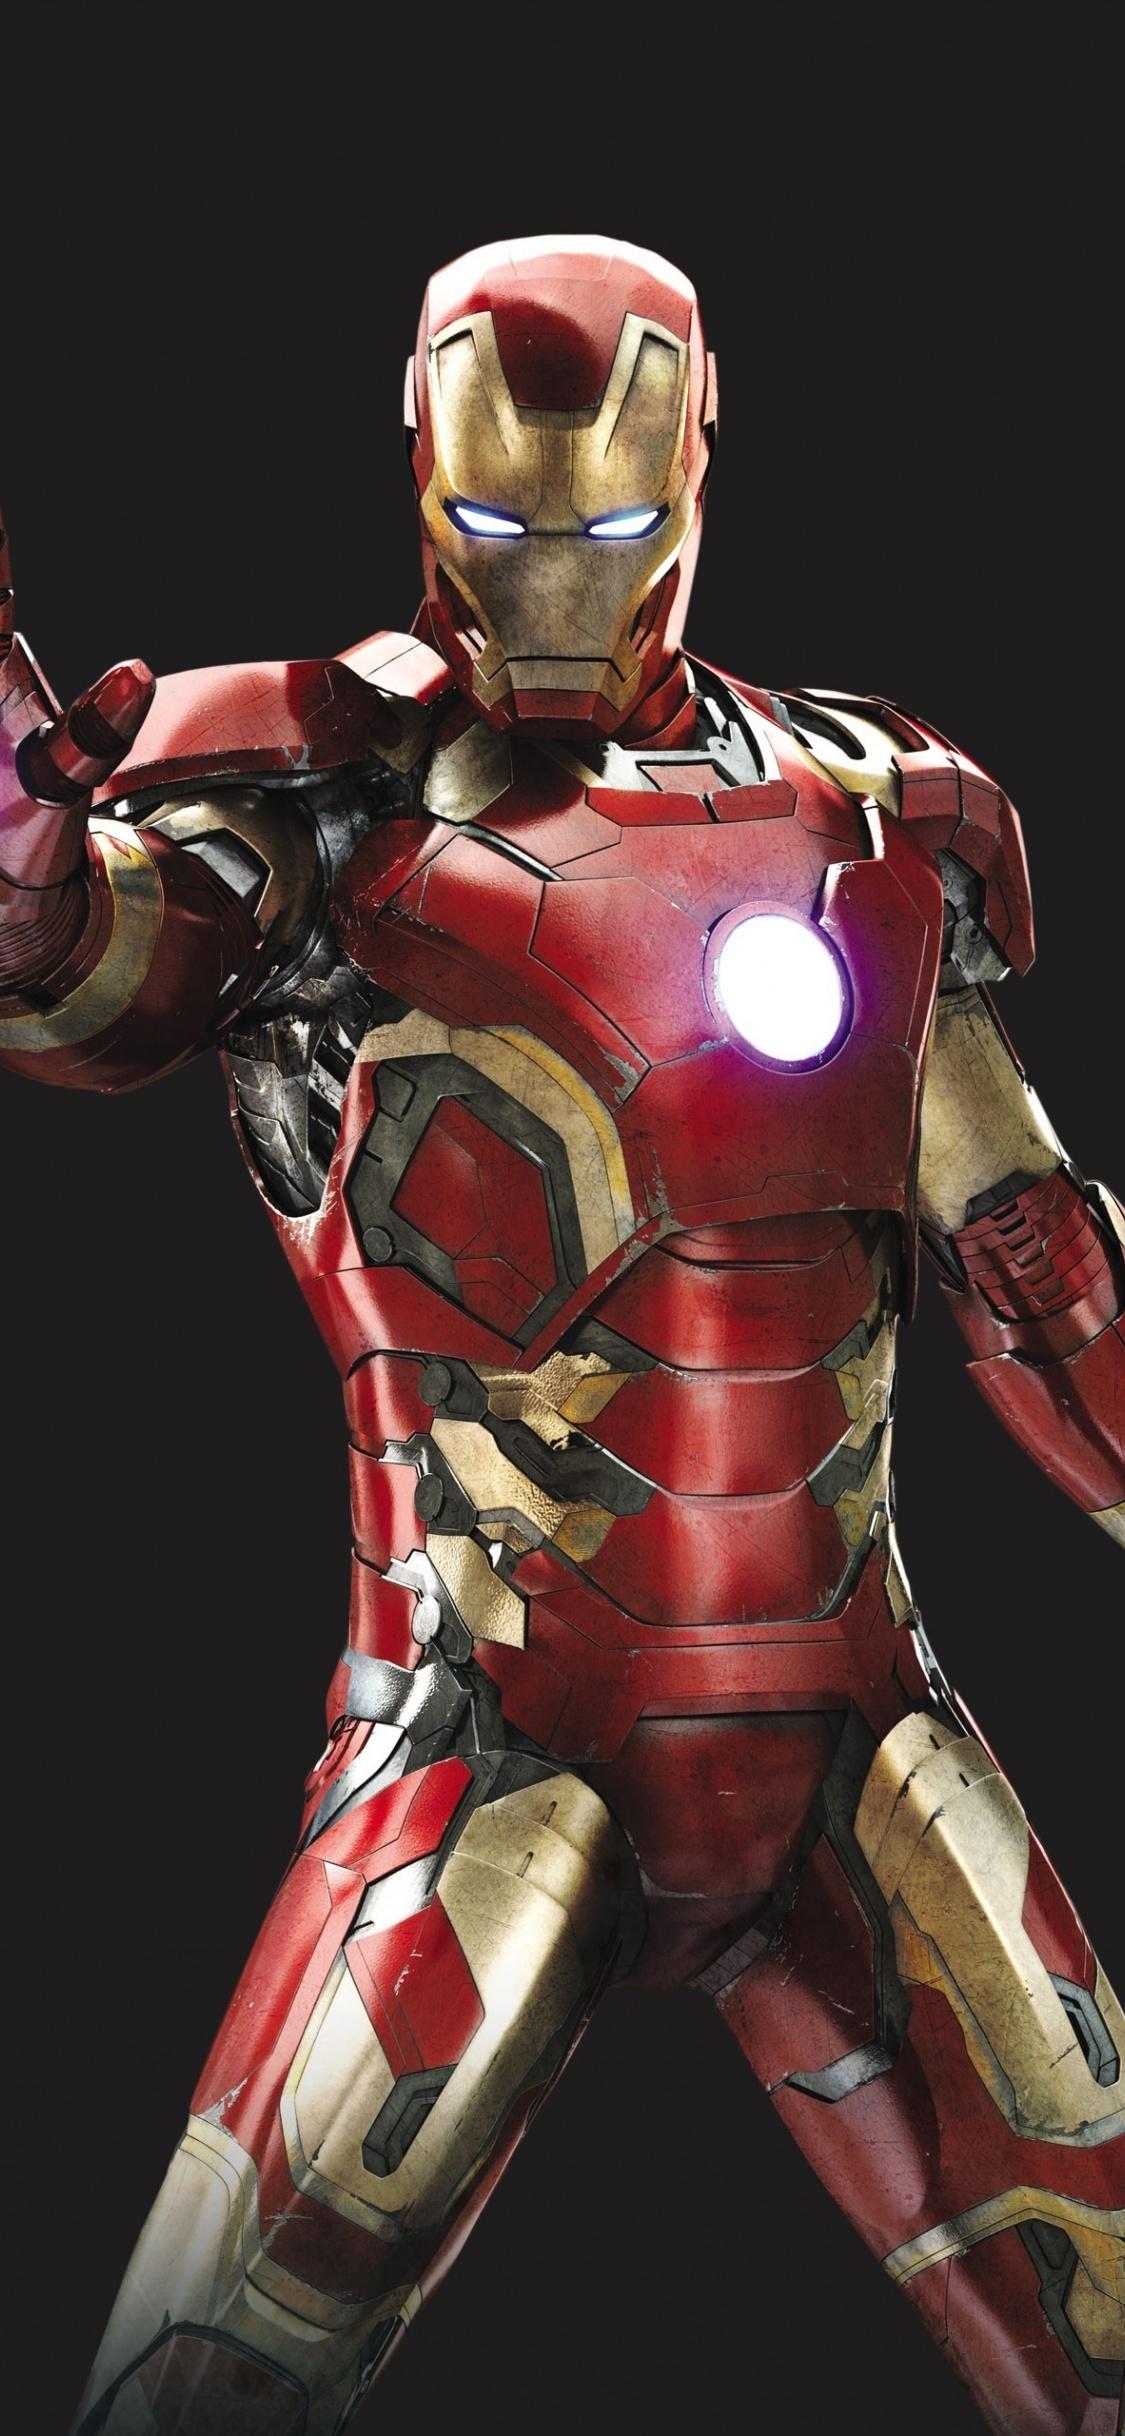 Download 1125x2436 Wallpaper Iron Man, Iron Suit, Superhero